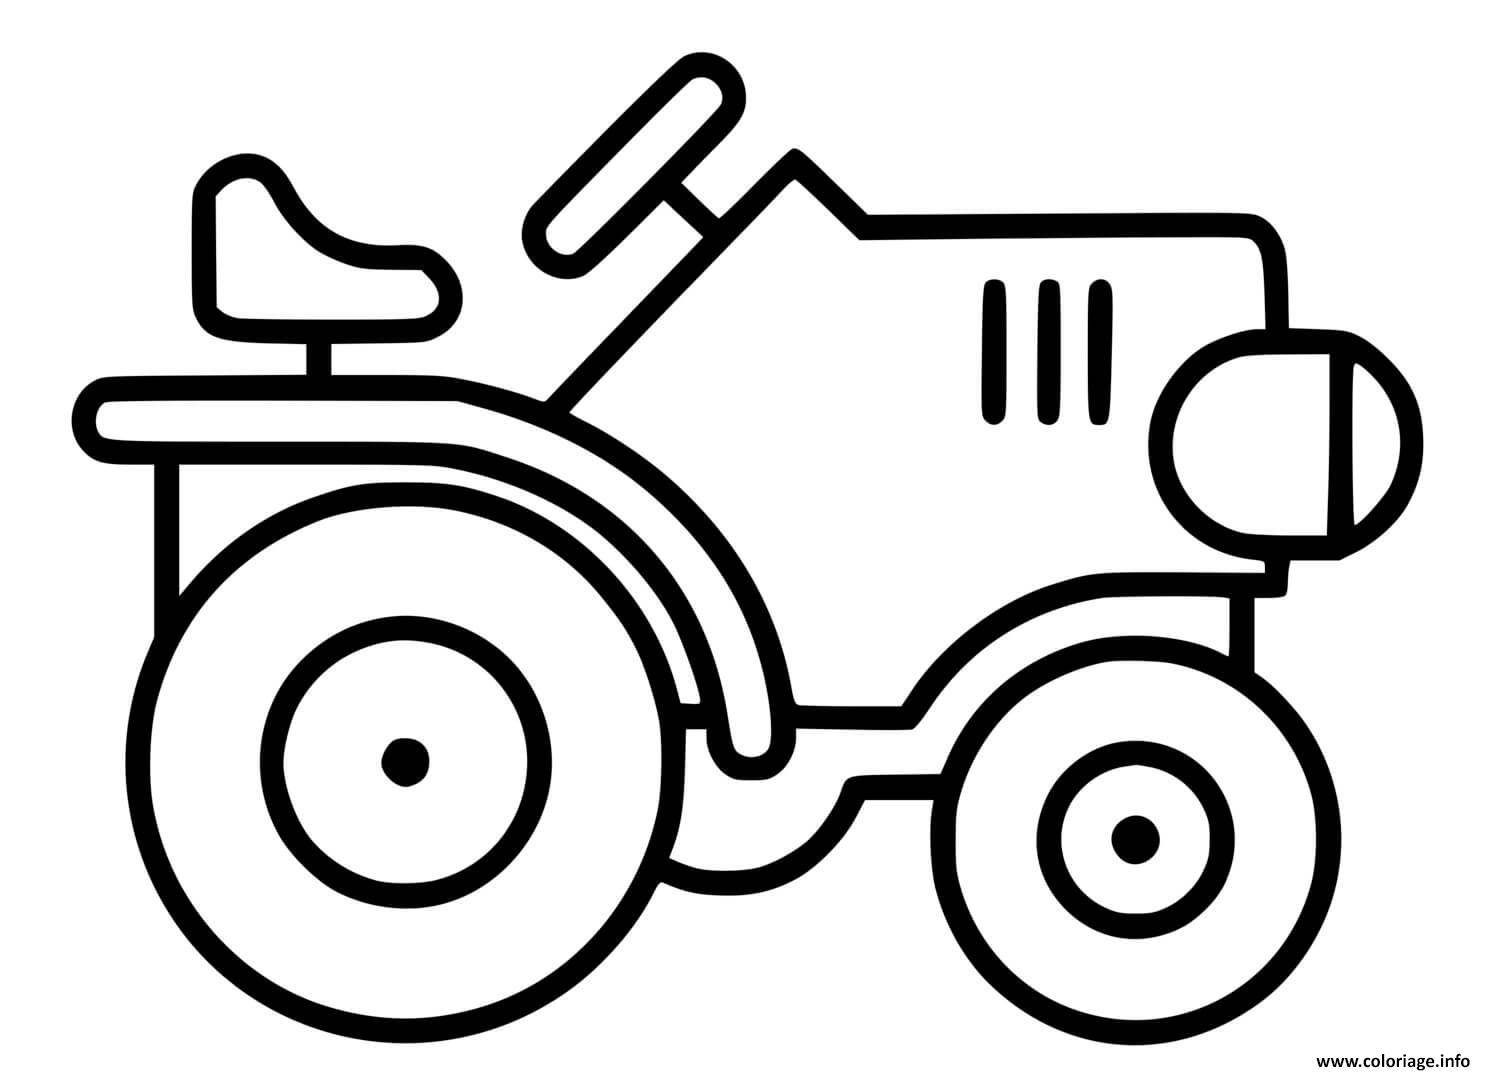 Dessin tracteur facile maternelle 2 ans Coloriage Gratuit à Imprimer